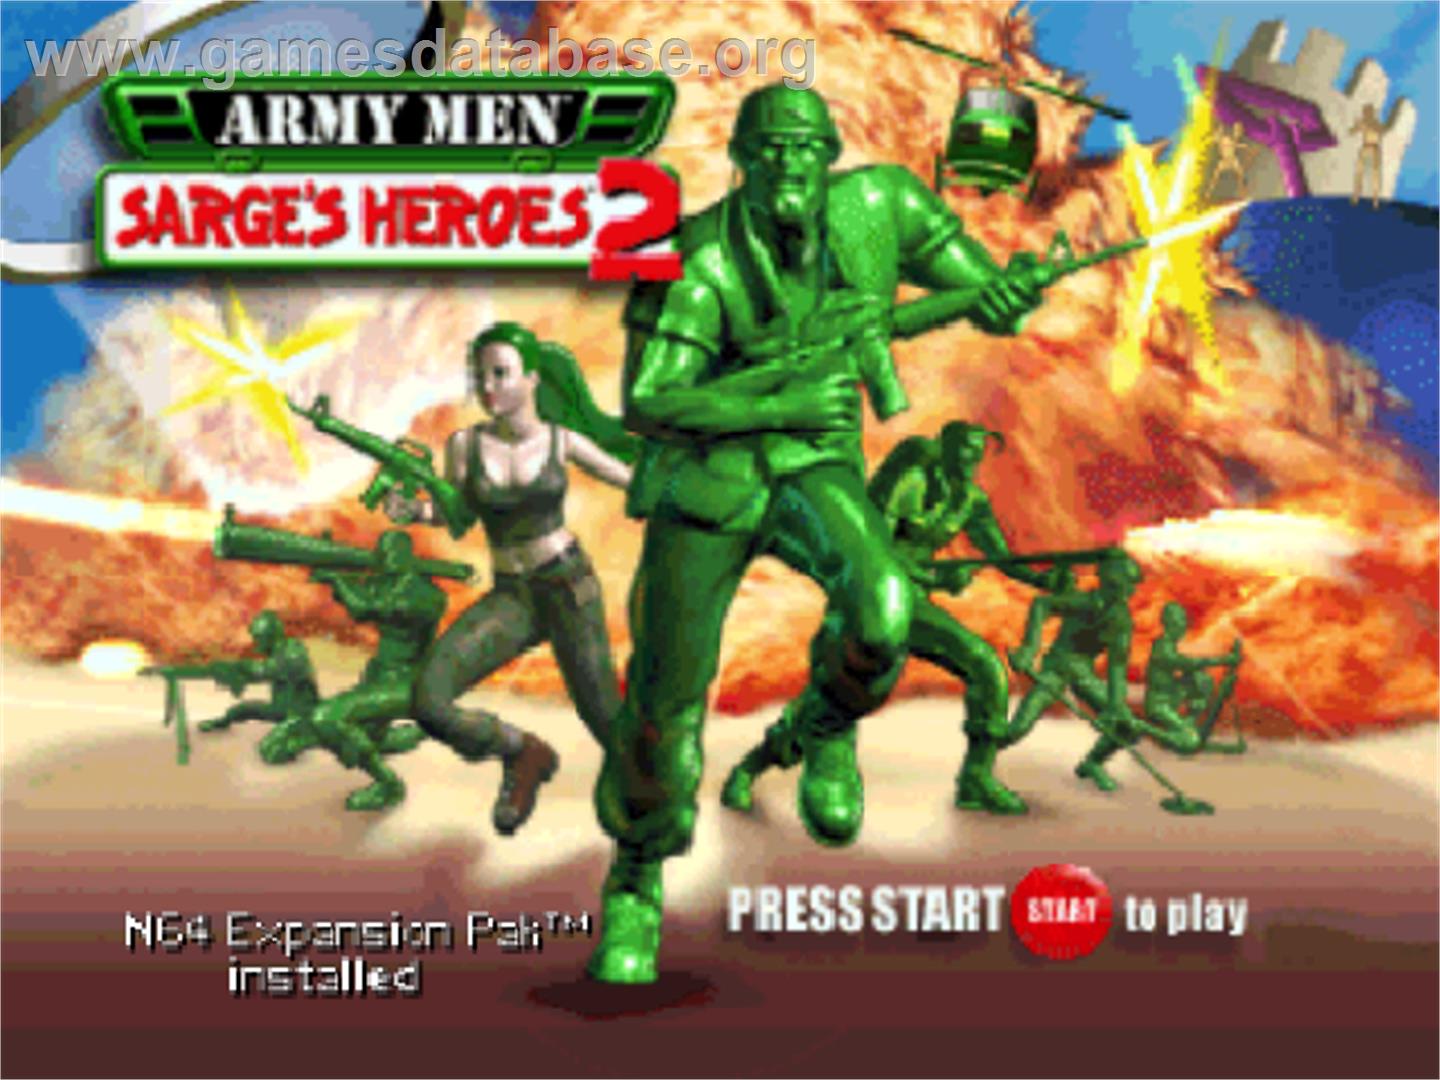 Army Men: Sarge's Heroes 2 - Nintendo N64 - Artwork - Title Screen